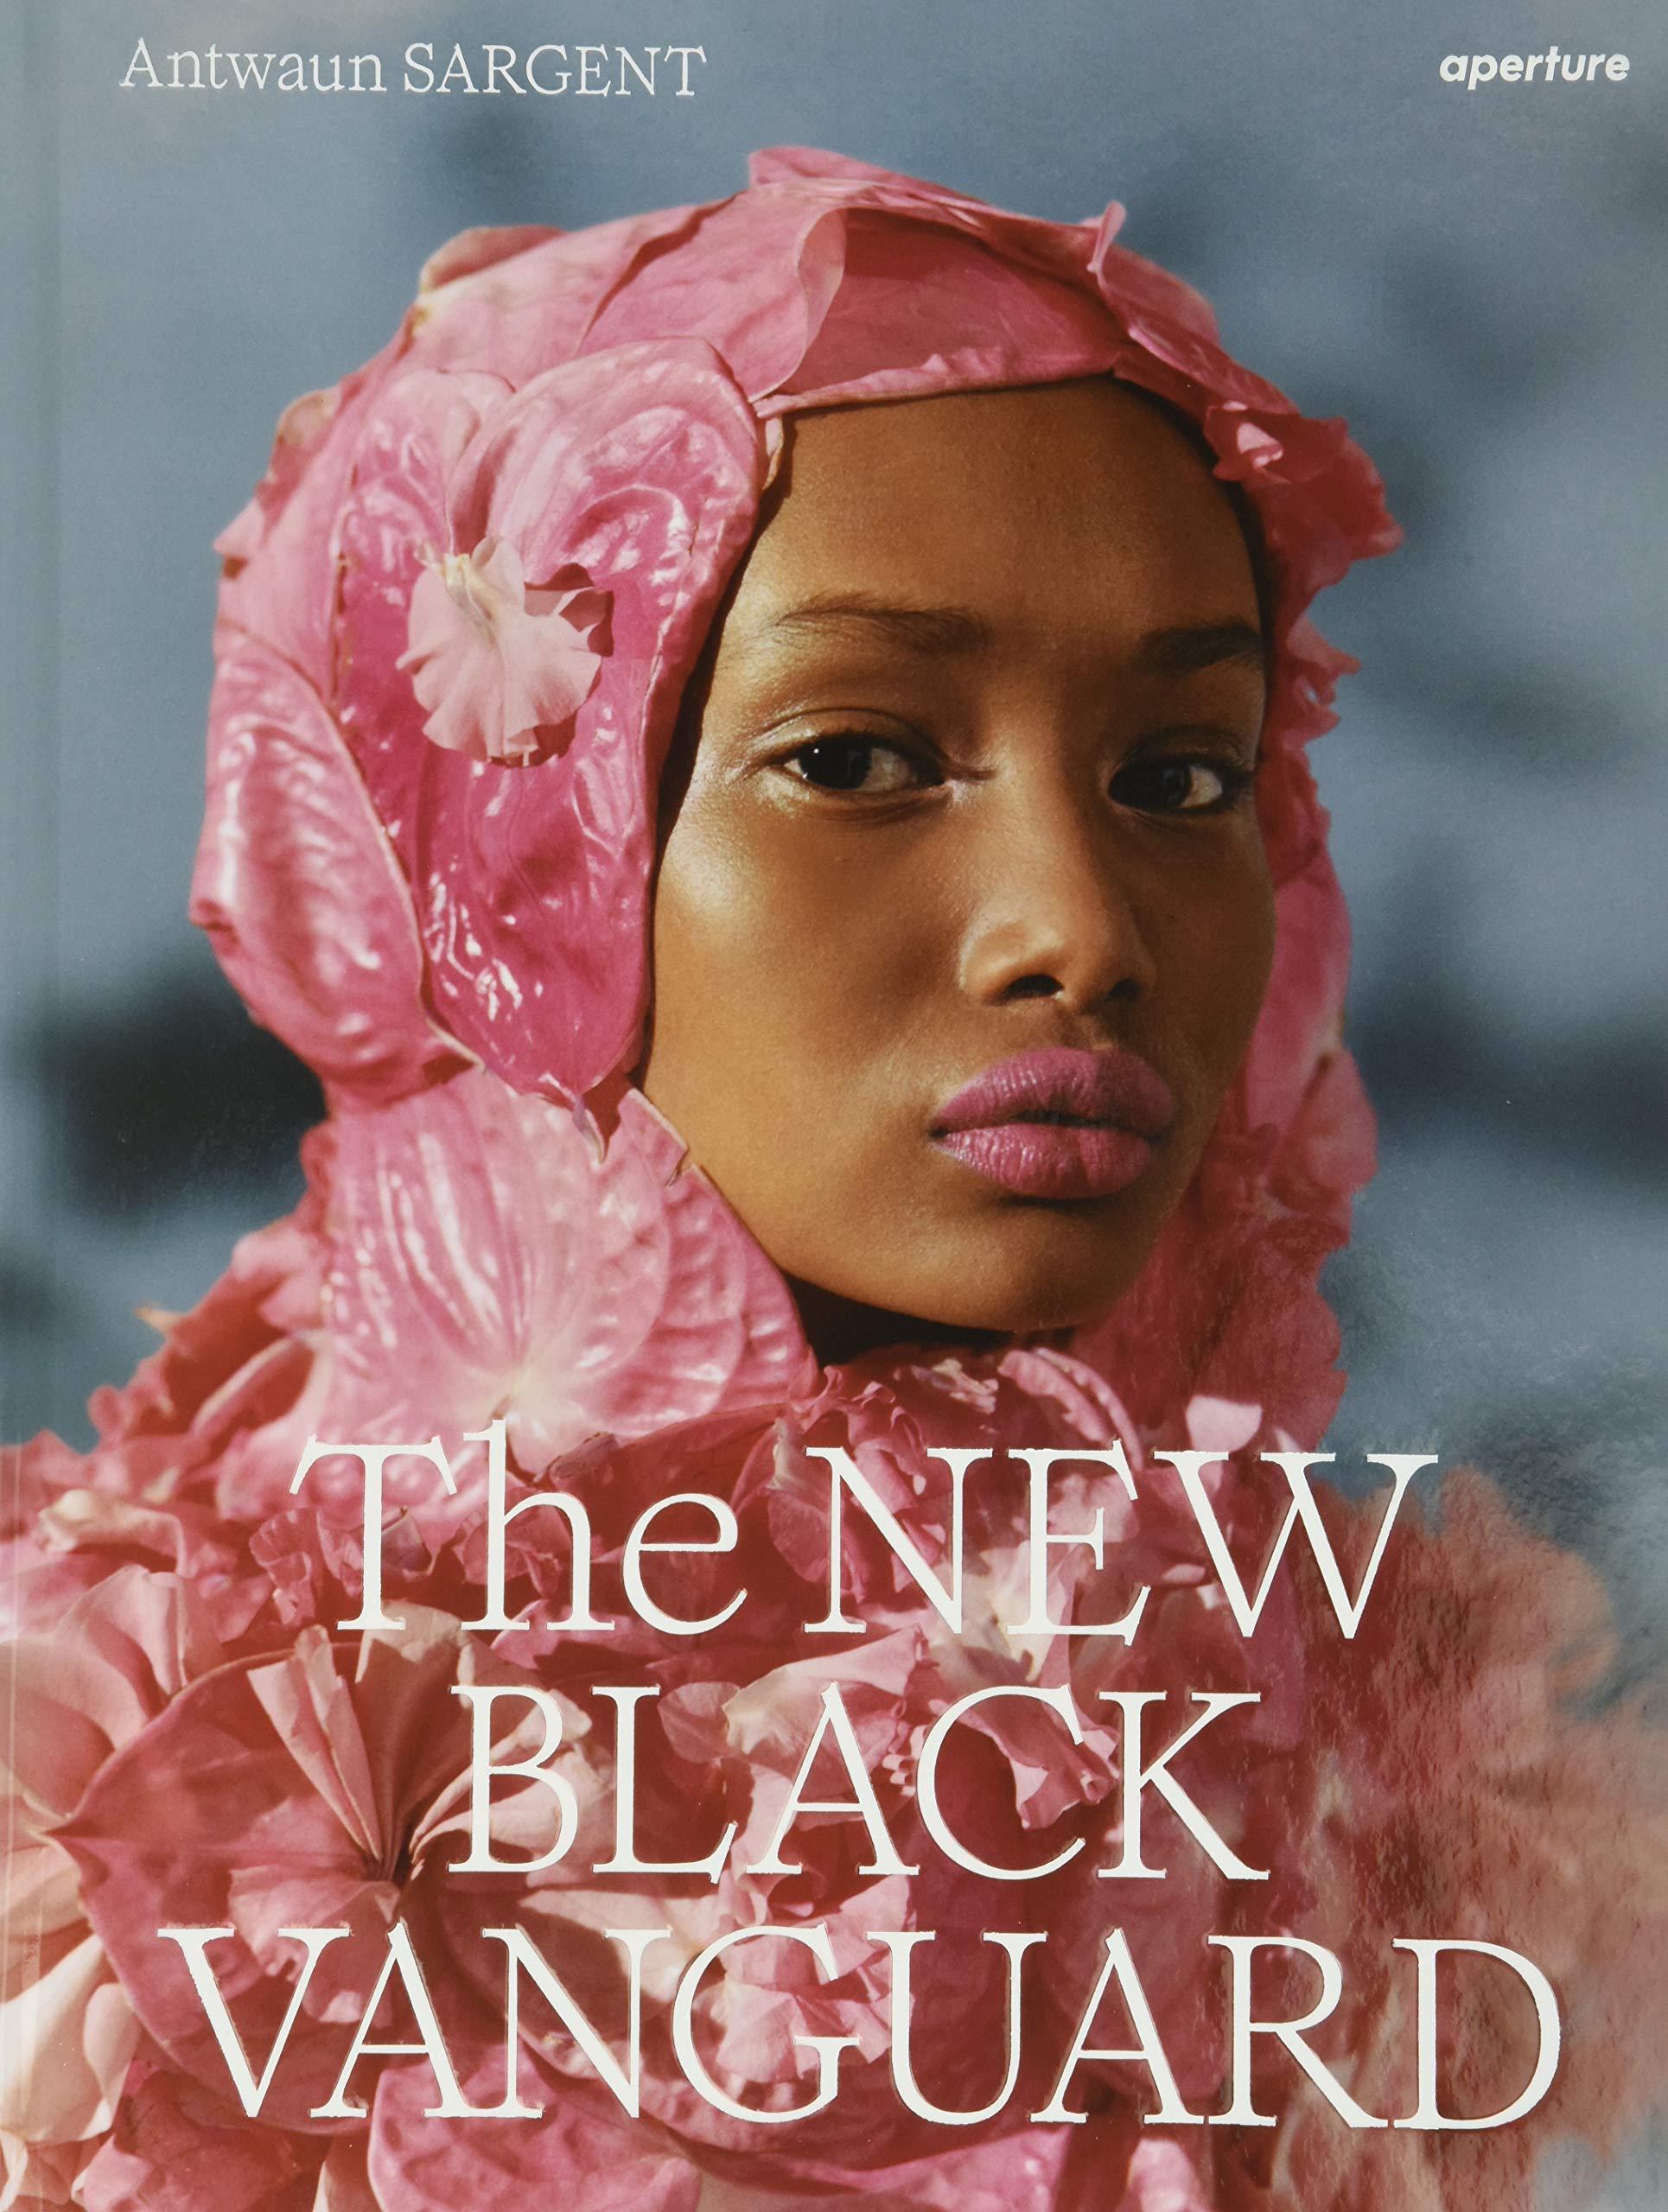 La pochette du livre de Antwaun Sargent, "The New Black Vanguard", "Hijab Couture". [Aperture - Tyler Mitchell]